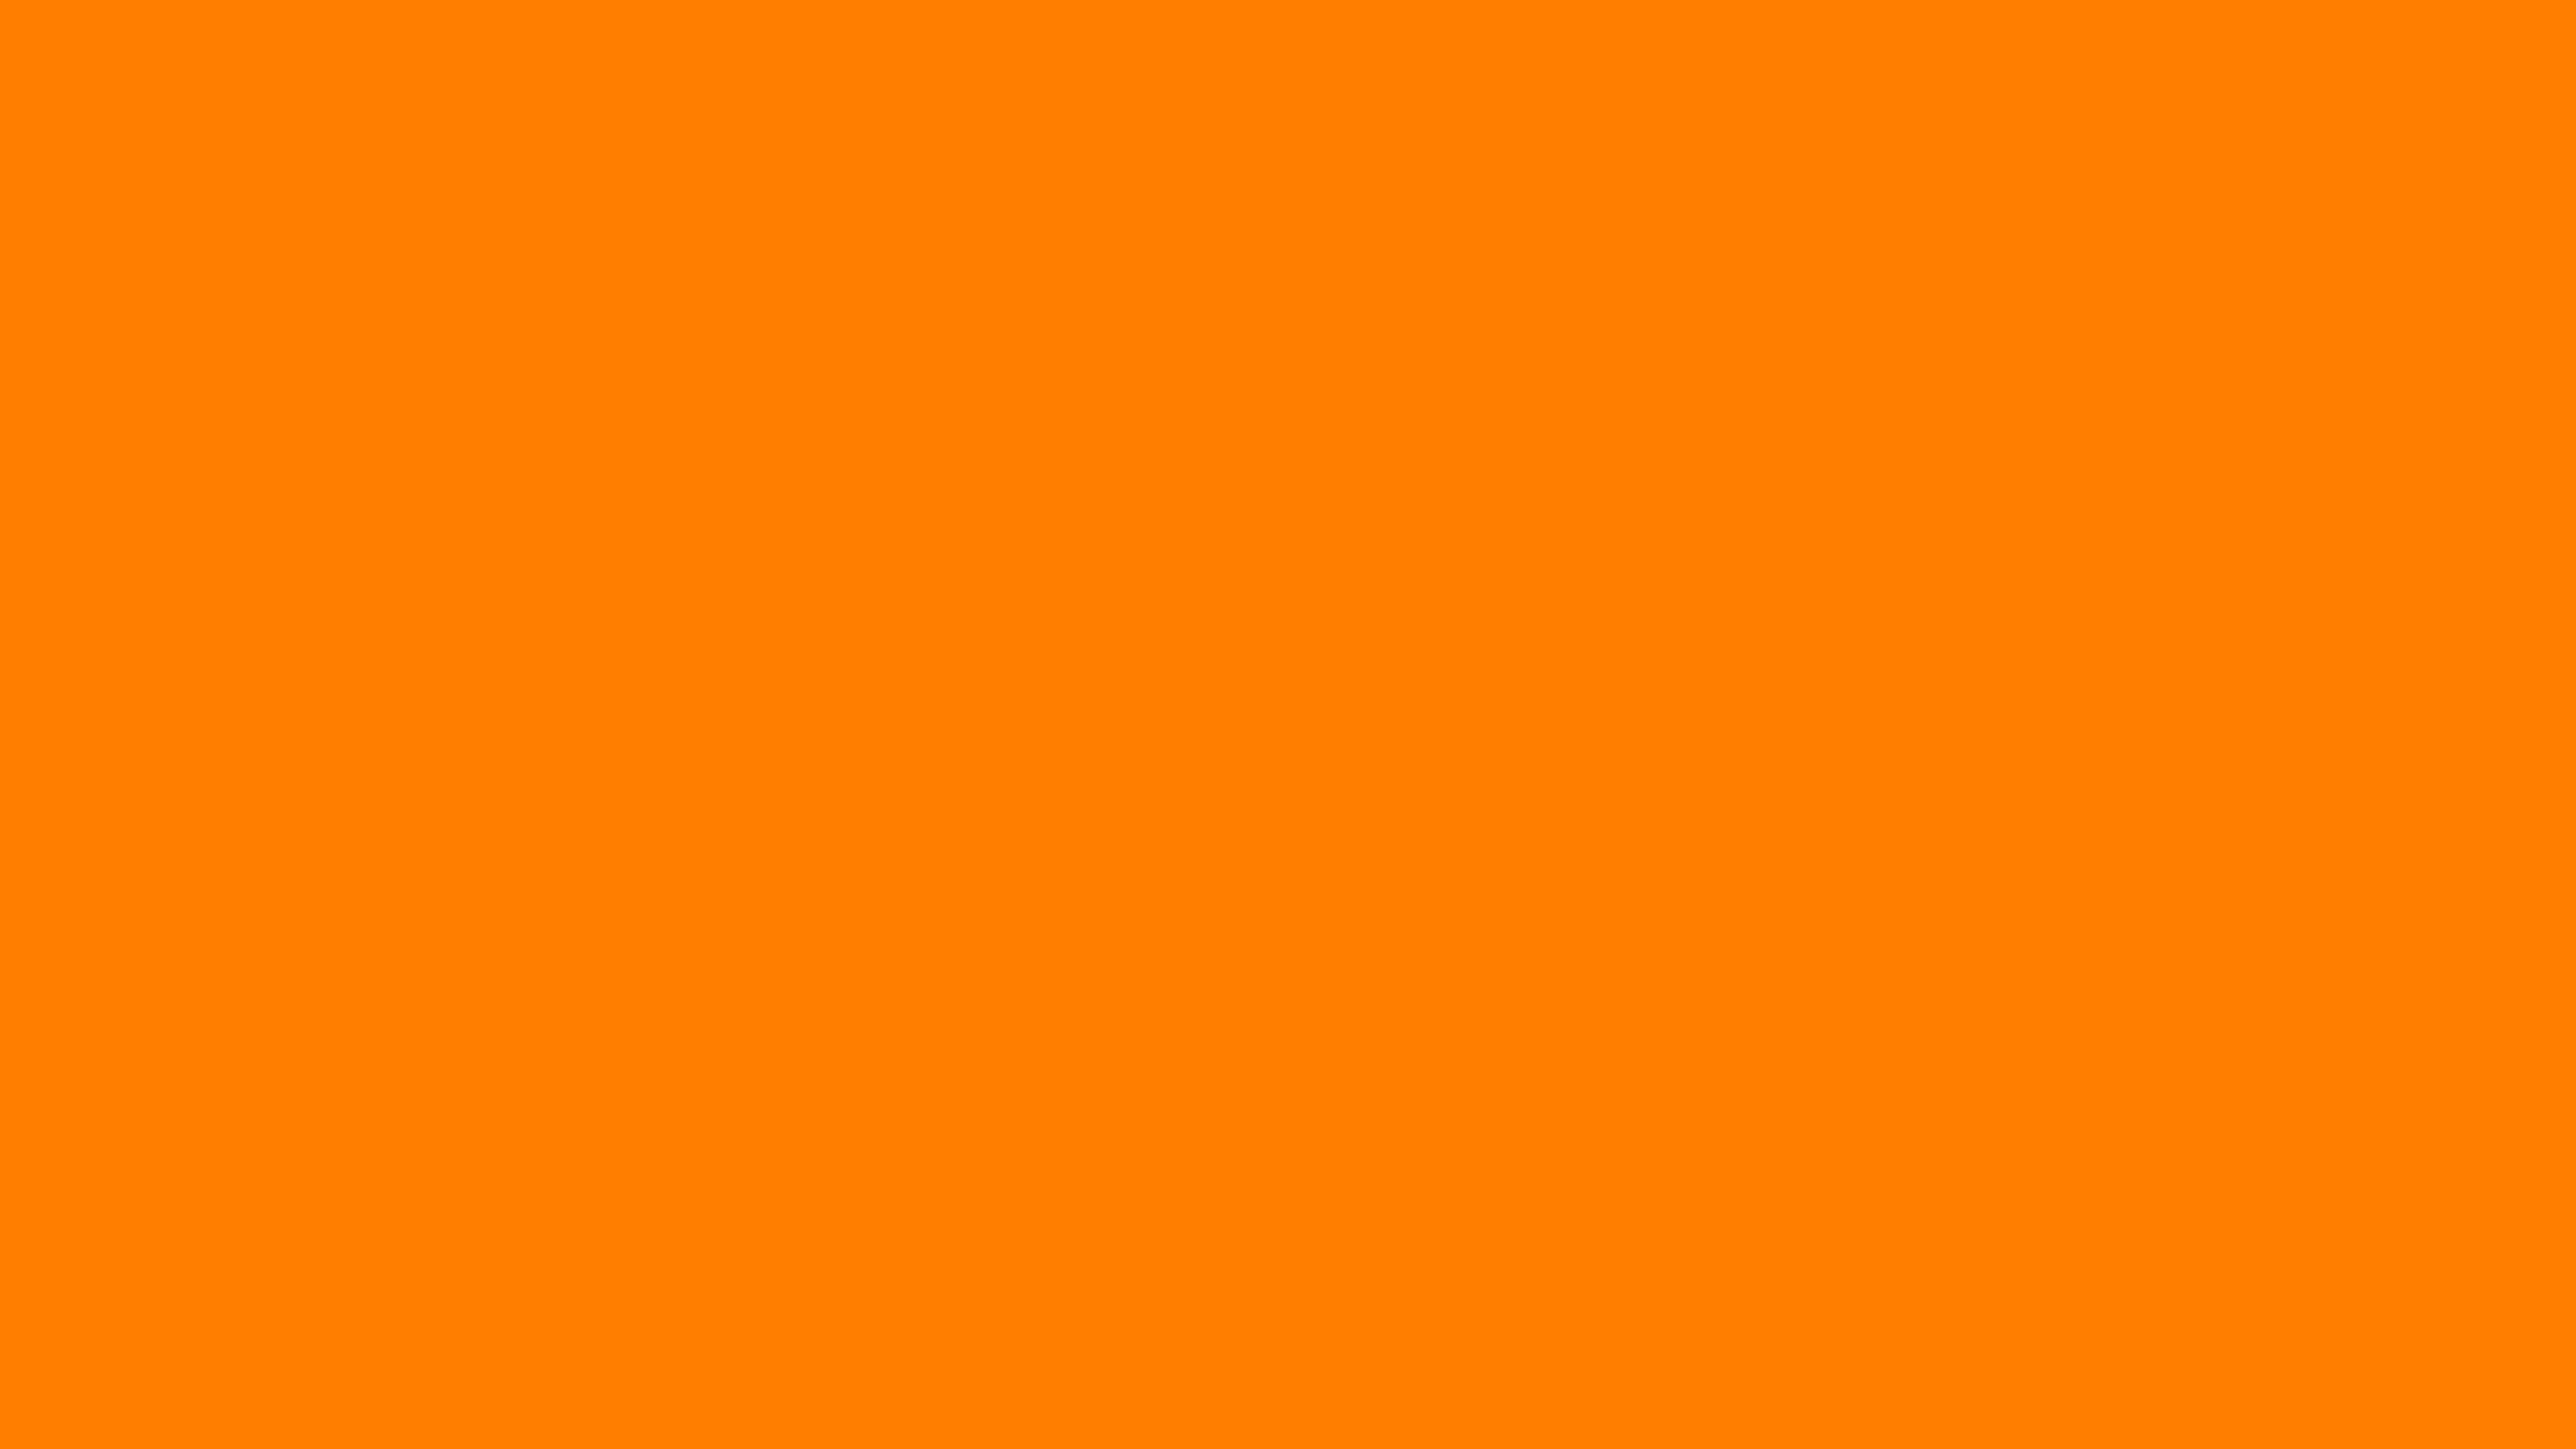 Nếu bạn muốn một nền tảng máy tính cam cam rõ ràng 3840x2160, hãy ngắm nhìn hình ảnh này. Với màu cam nổi bật và độ tách biệt cao, hình nền này sẽ đem lại cái nhìn sắc nét và rõ ràng cho máy tính của bạn. Hãy thử nghiệm sức mạnh của nó và trang trí cho máy tính của bạn ngay hôm nay.